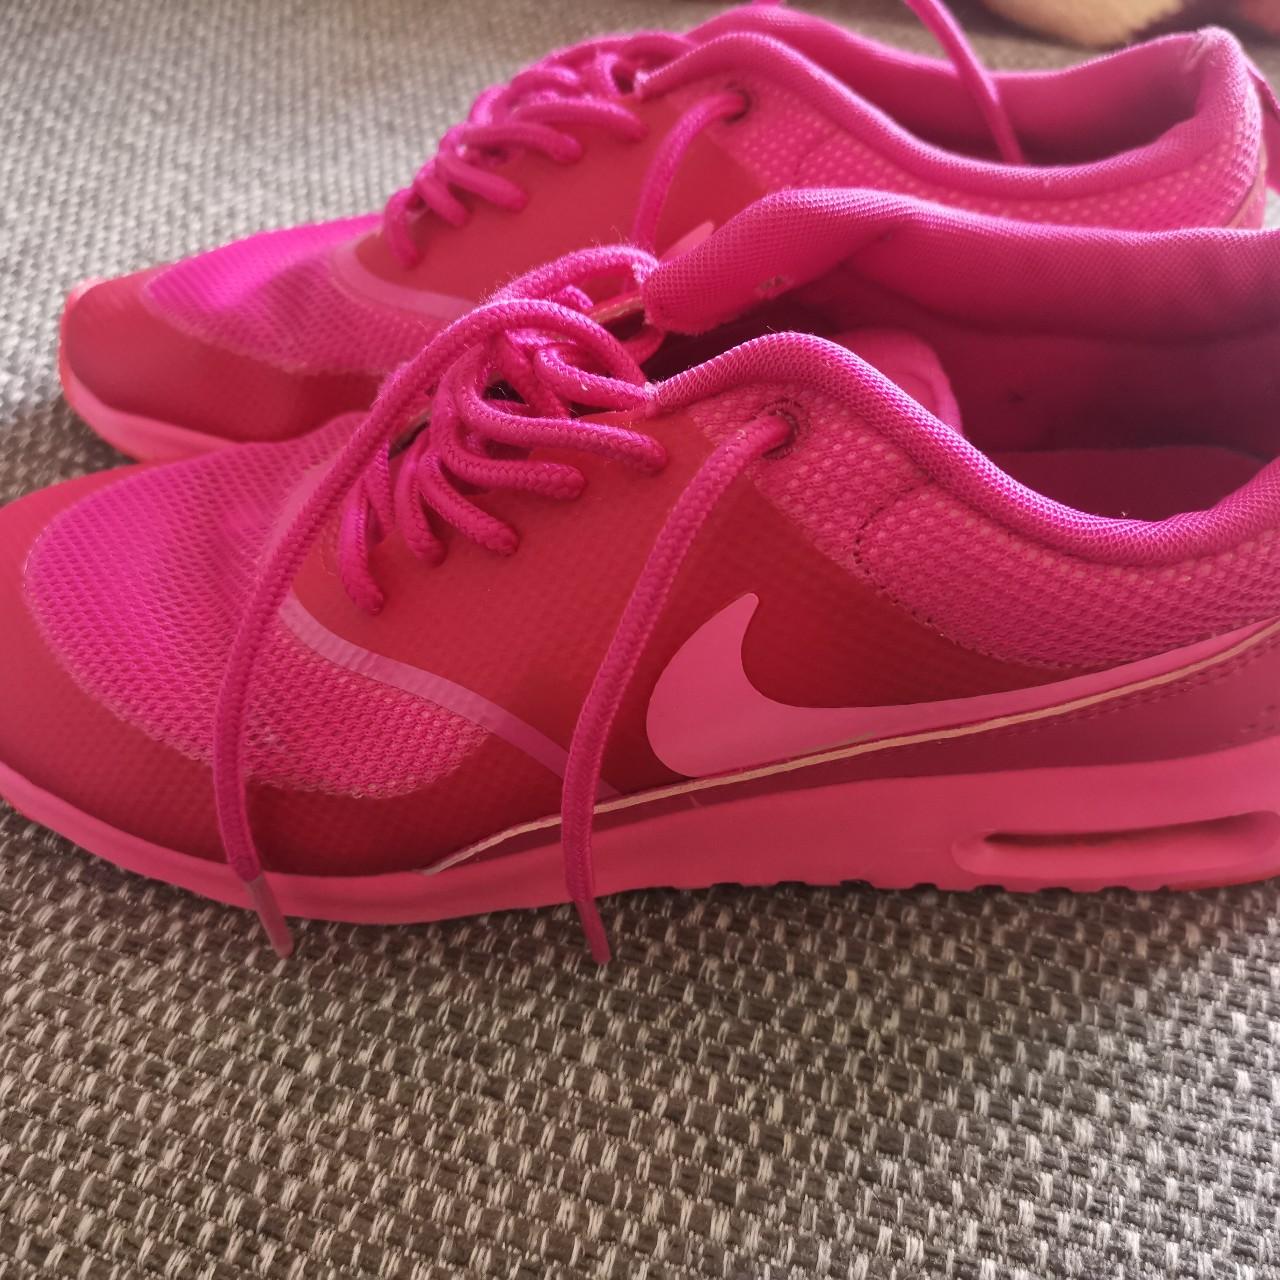 String string Briesje Kalmte 2015 Pink pow fireberry Nike Air max Thea Size... - Depop